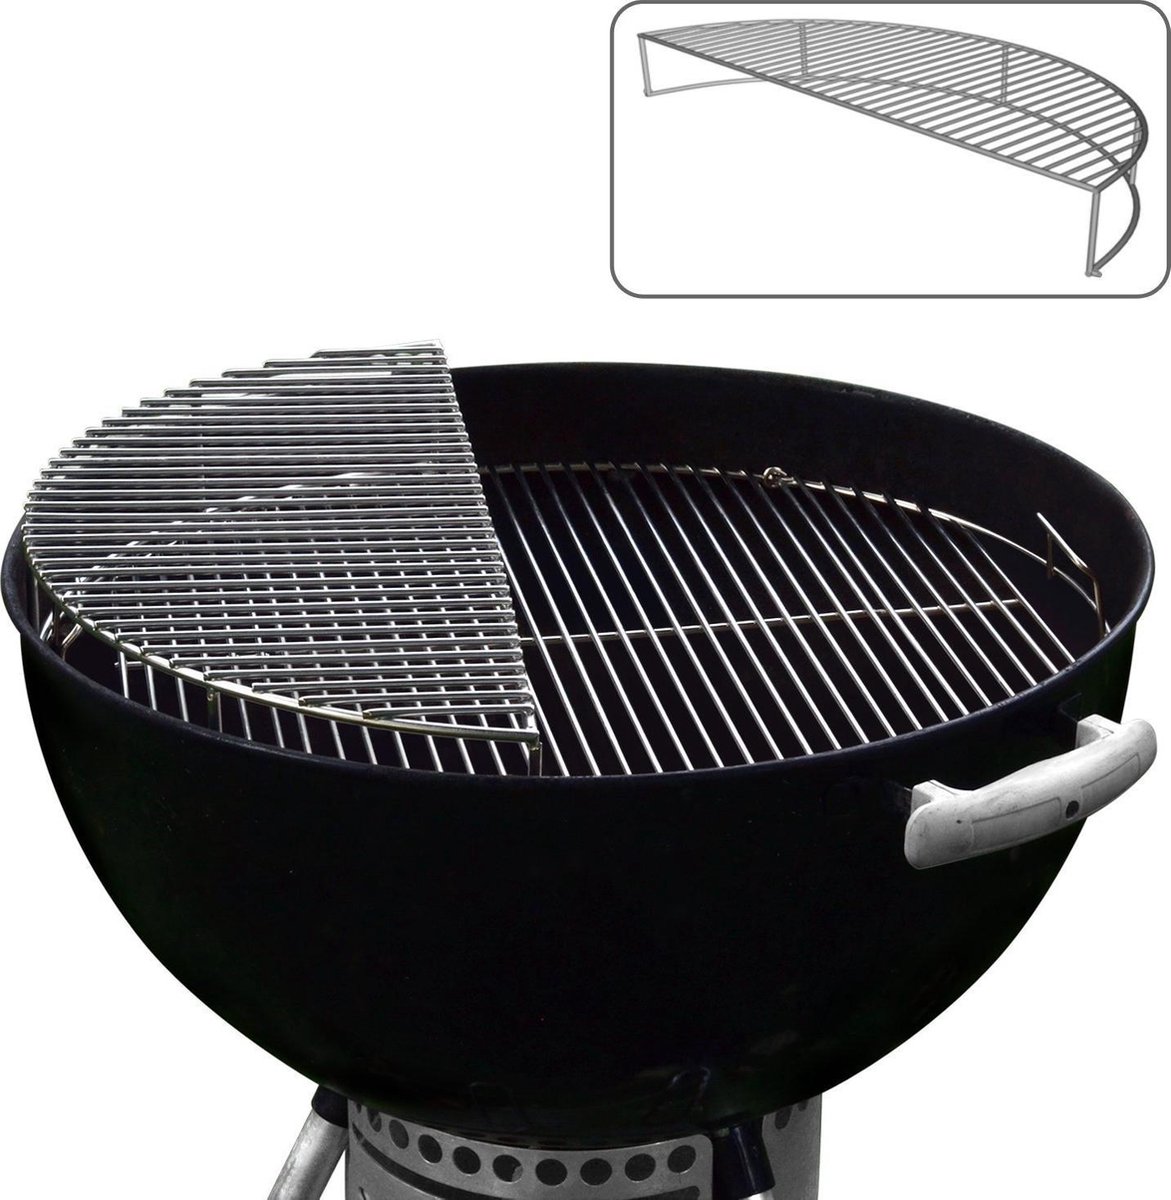 RVS Opwarm / Grill/ Rook uitbreidingsrooster - Voor gebruik met 57 CM Kettle BBQ's (past o.a. op alle Weber kogel BBQ's) - Jx